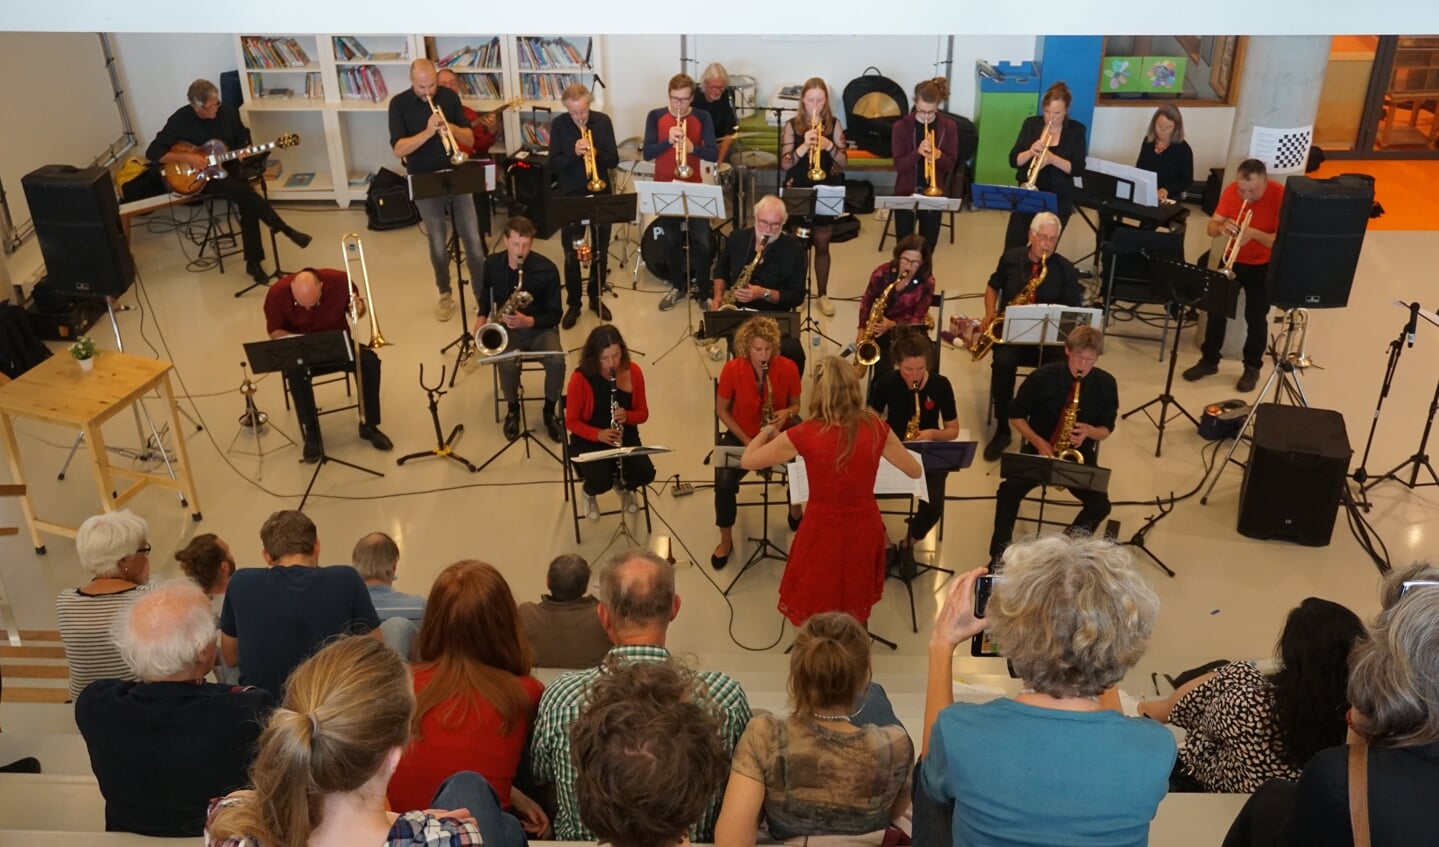 Aan het einde van deze bruisende dag gaf de Big Band geeft o.l.v. Anita van Soest een concert in Het Lichtruim. Het publiek reageerde enthousiast op de swingende muziek. (foto Frans Poot)